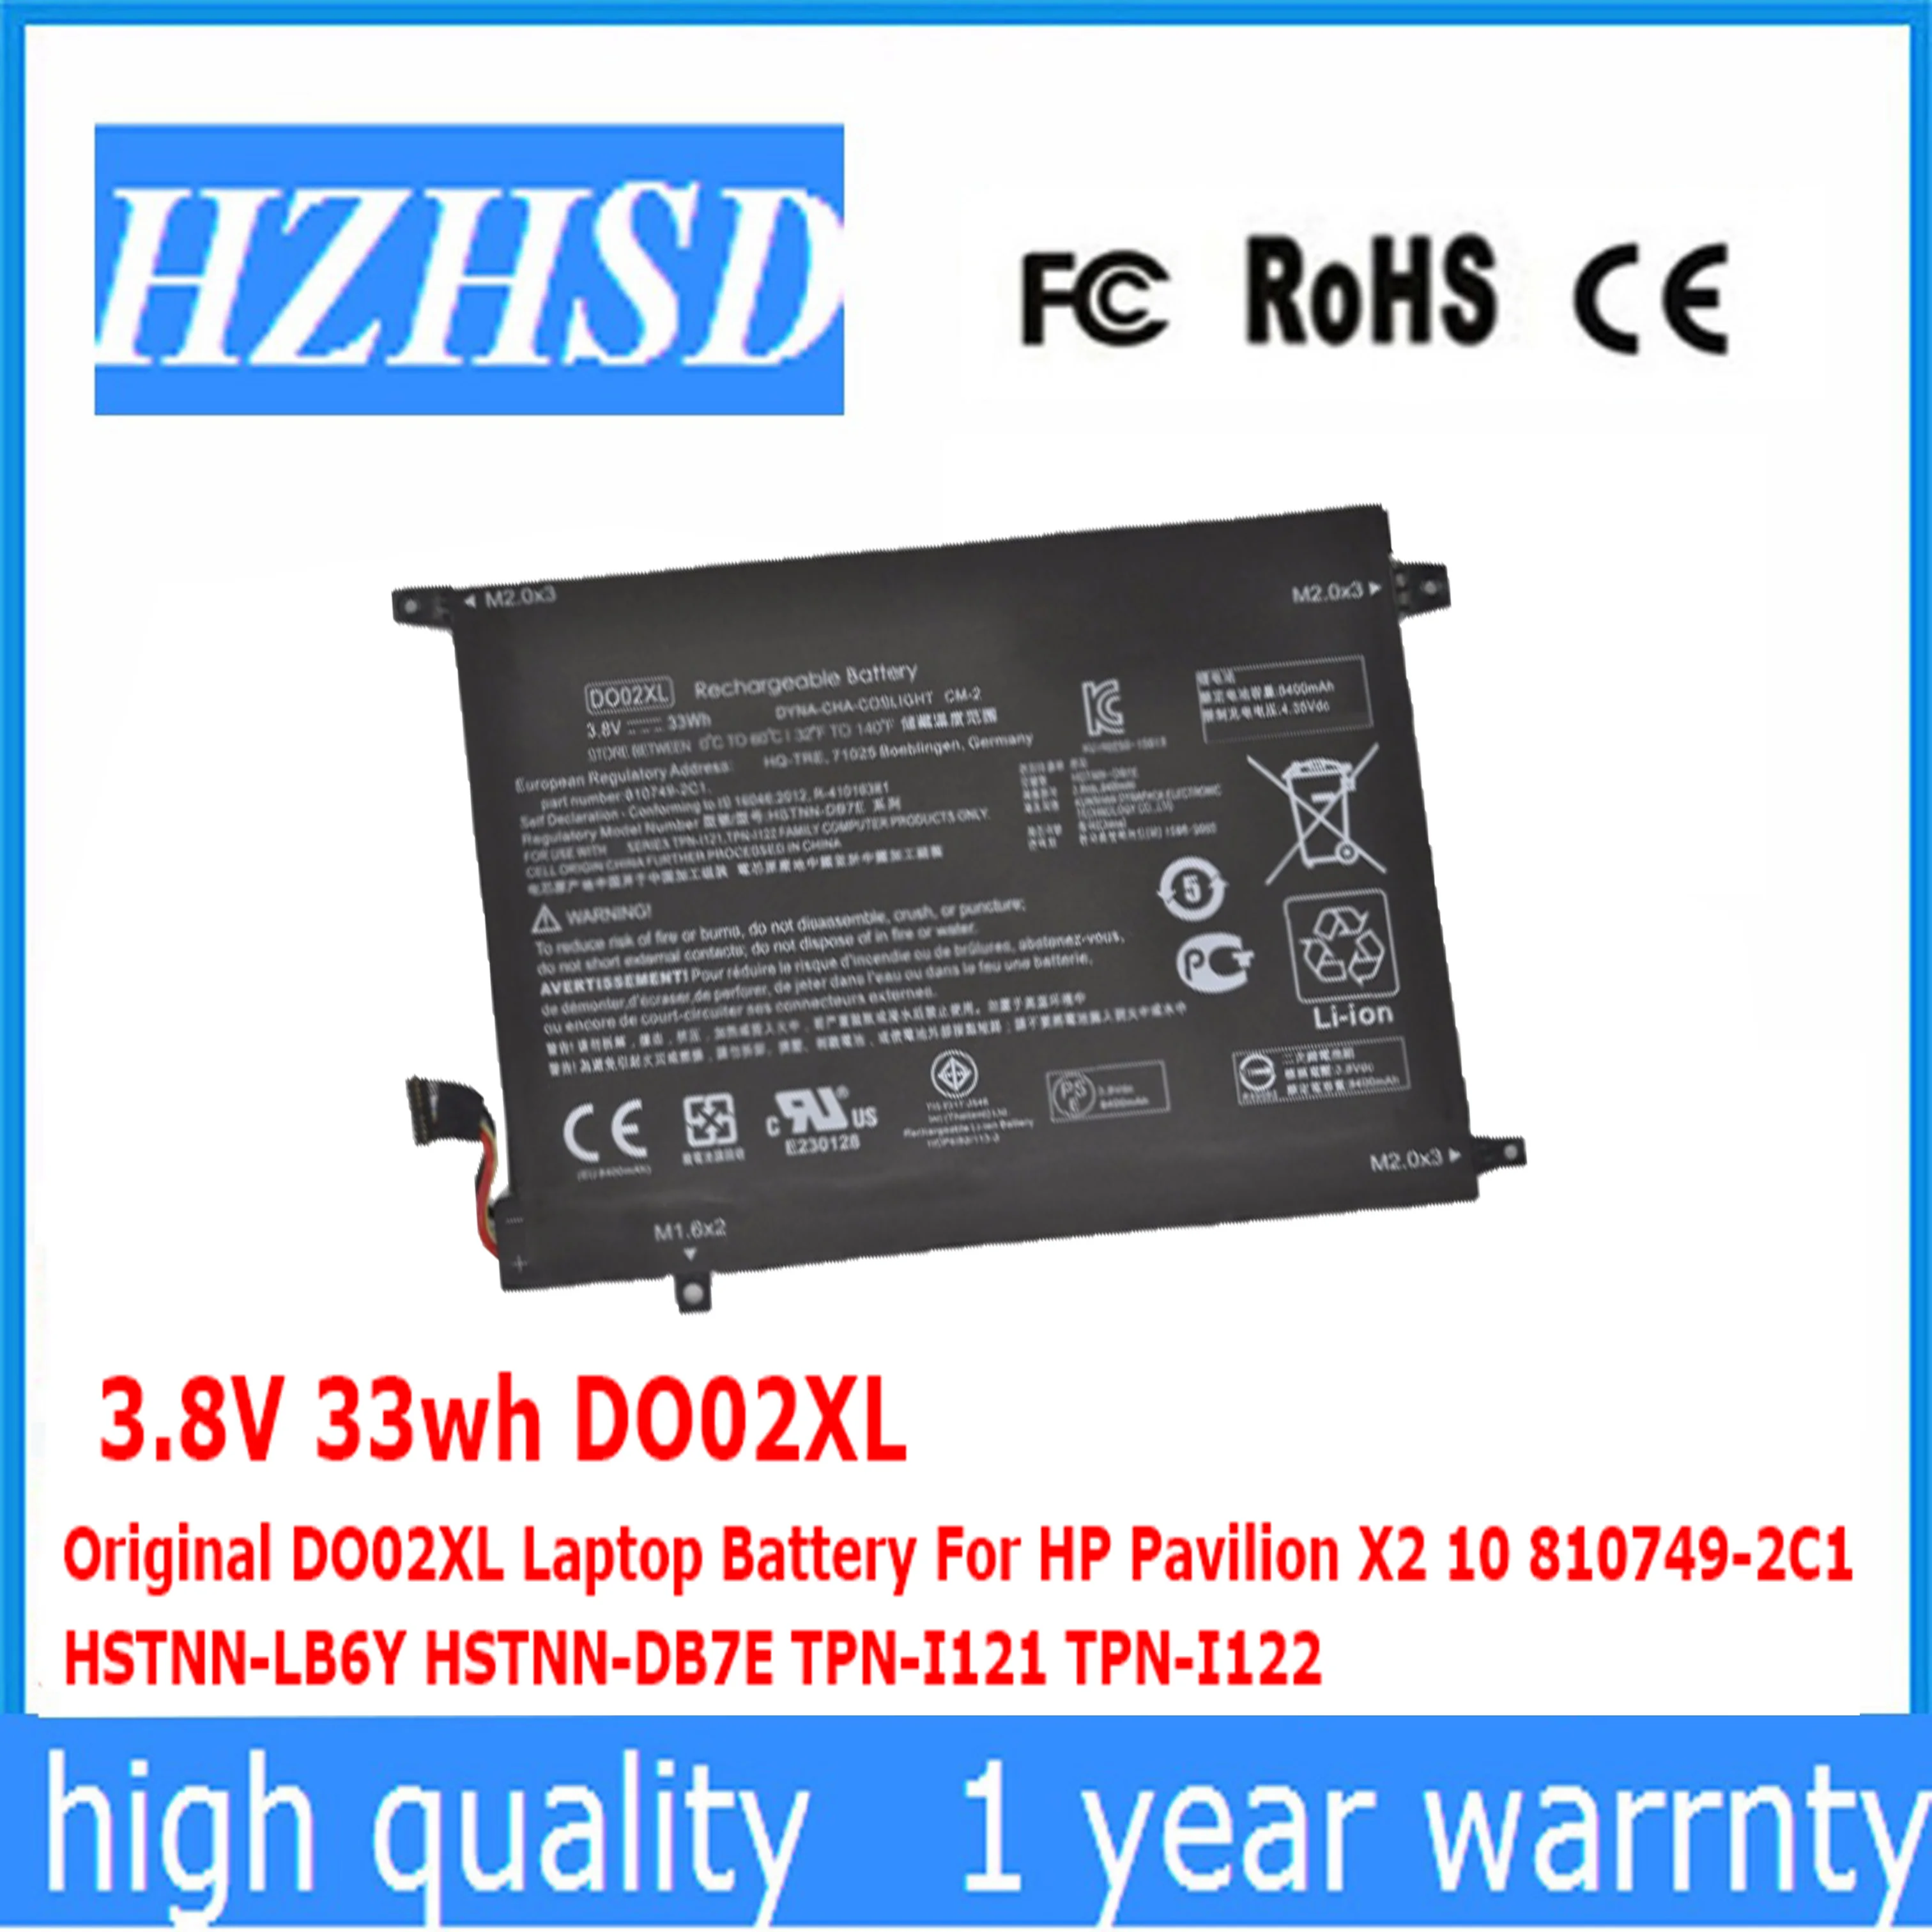 

3.8V 33wh DO02XL Original DO02XL Laptop Battery For HP Pavilion X2 10 810749-2C1 HSTNN-LB6Y HSTNN-DB7E TPN-I121 TPN-I122